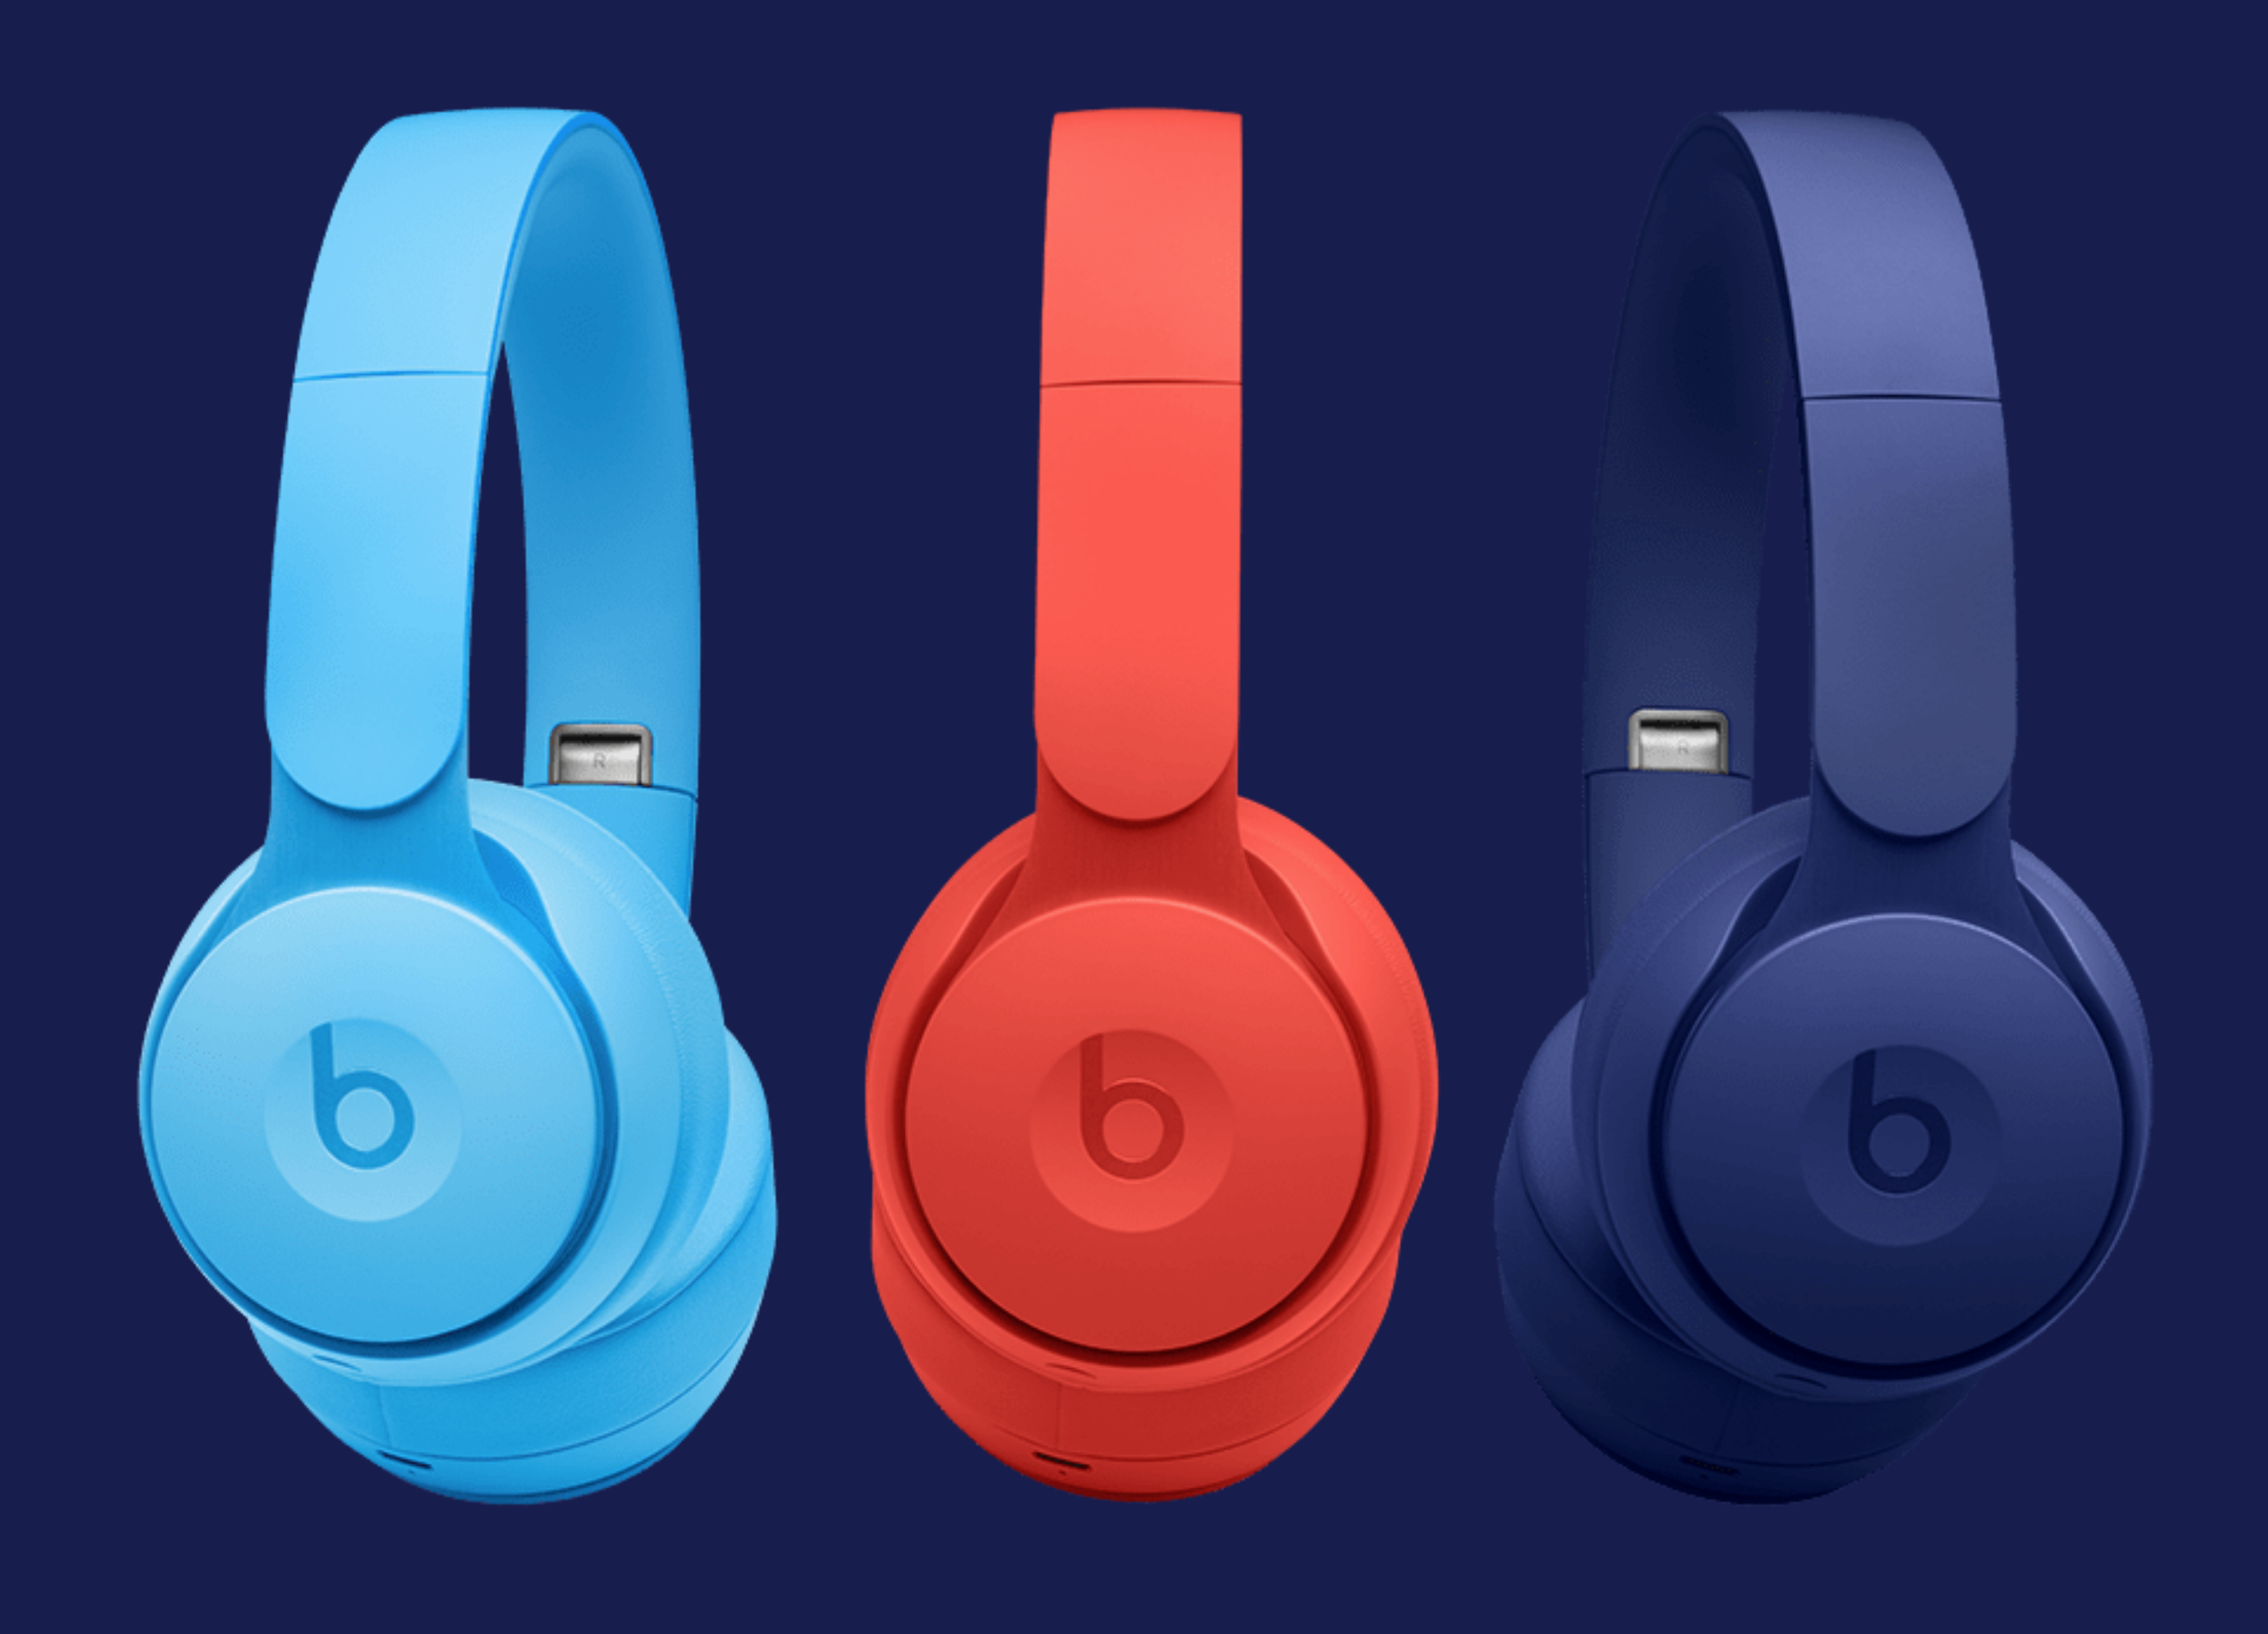 Apple dumps several Beats headphones models